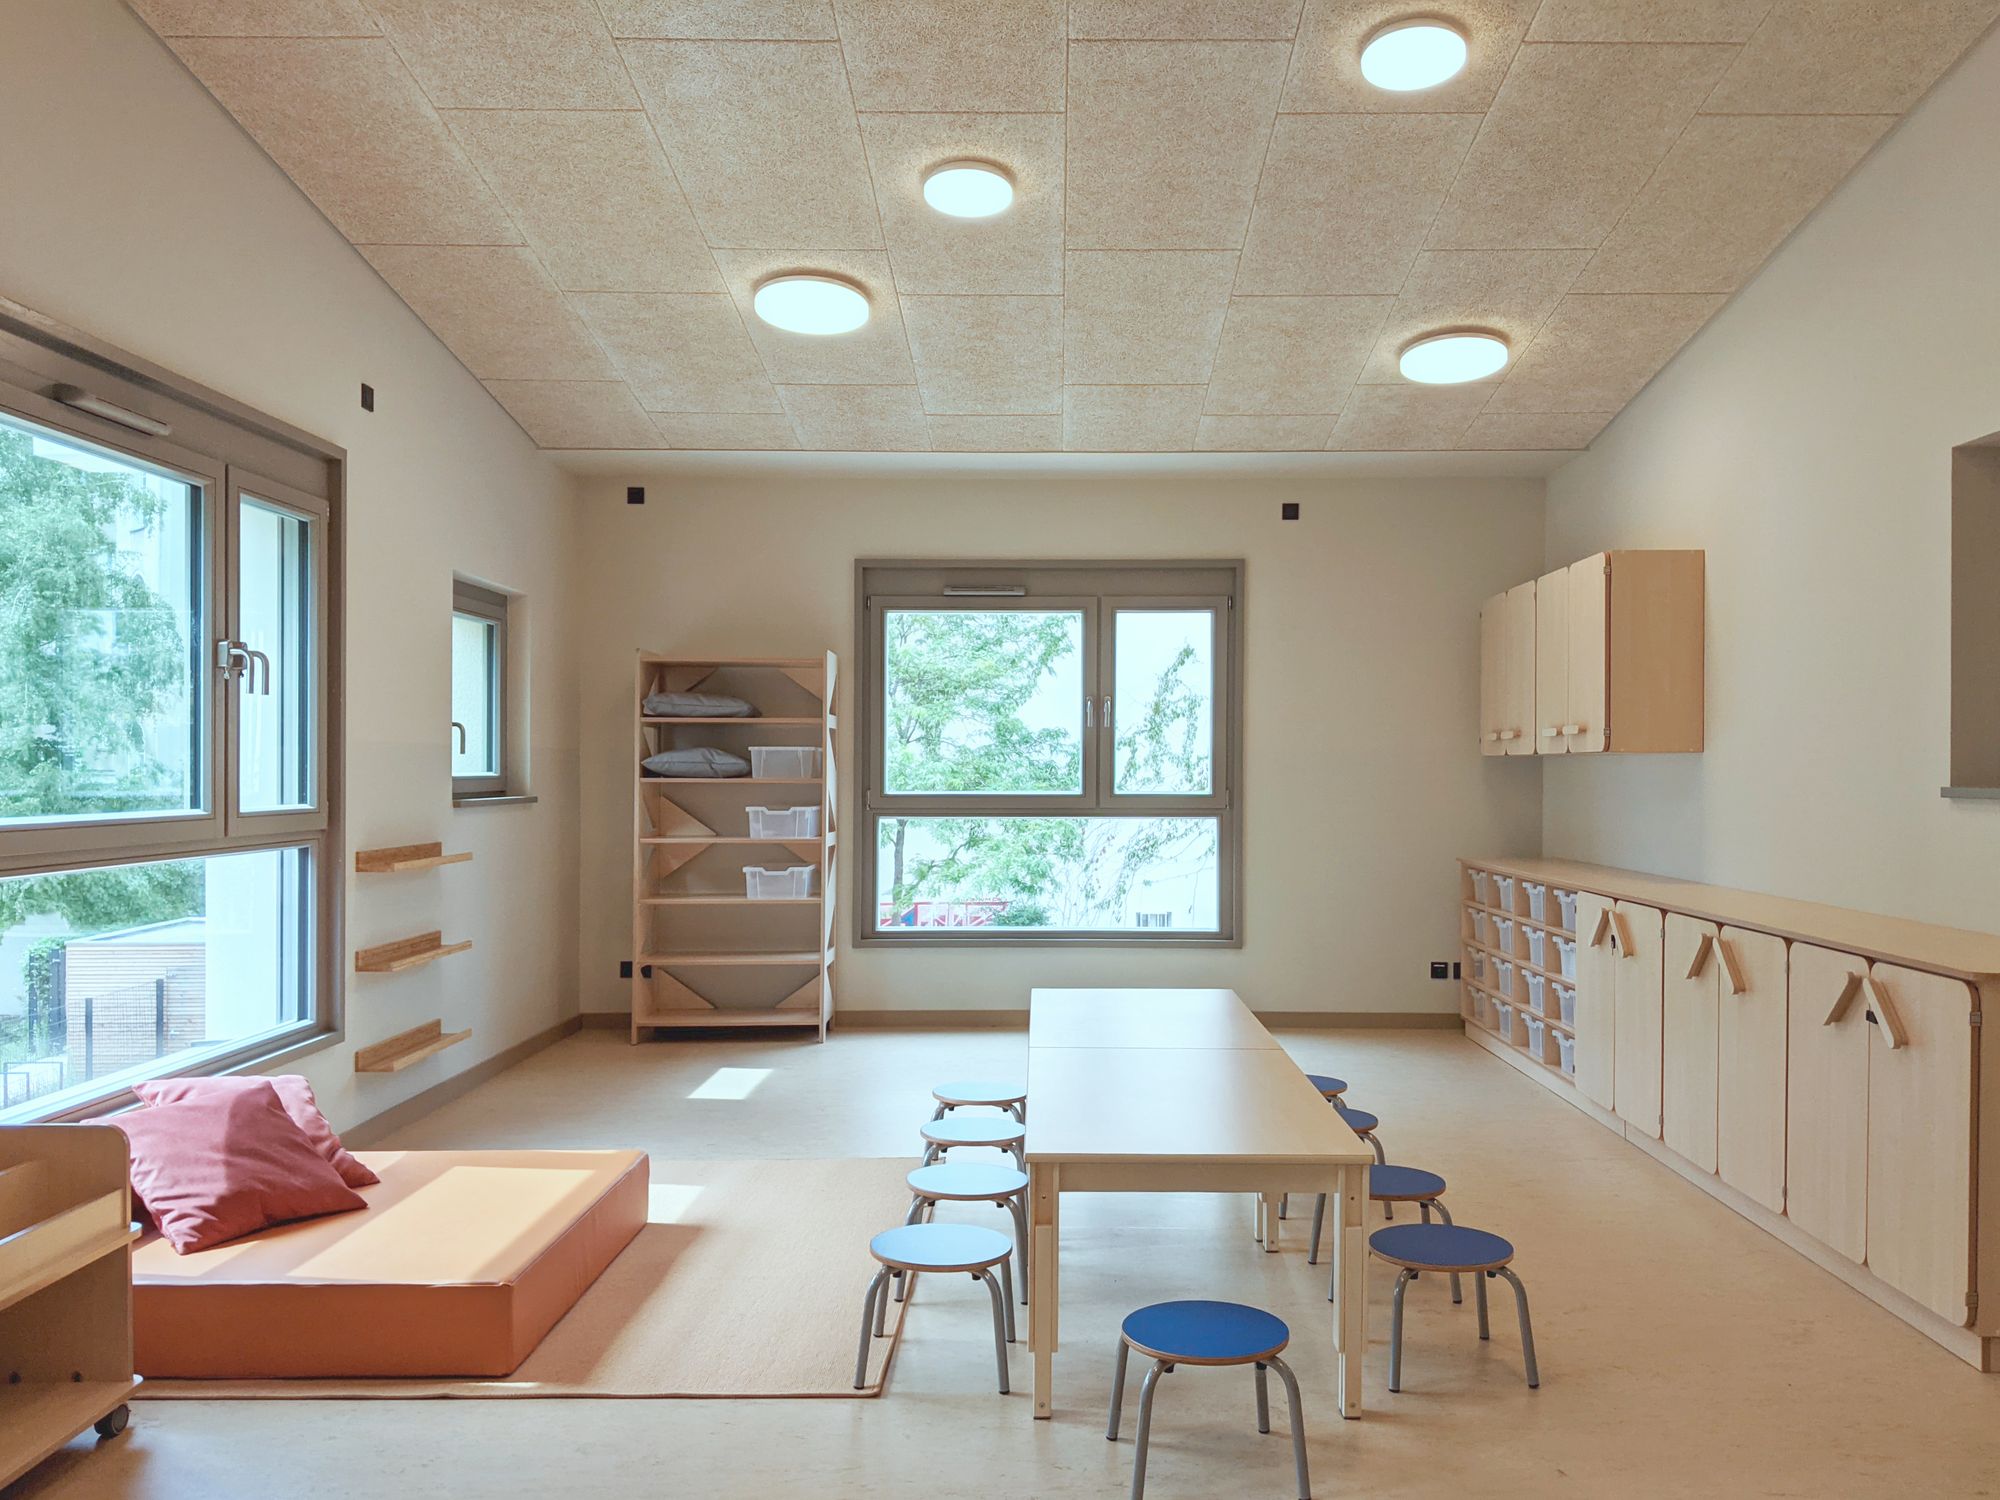 图片[3]|Kita Ora儿童日托设施|ART-Arrakis | 建筑室内设计的创新与灵感